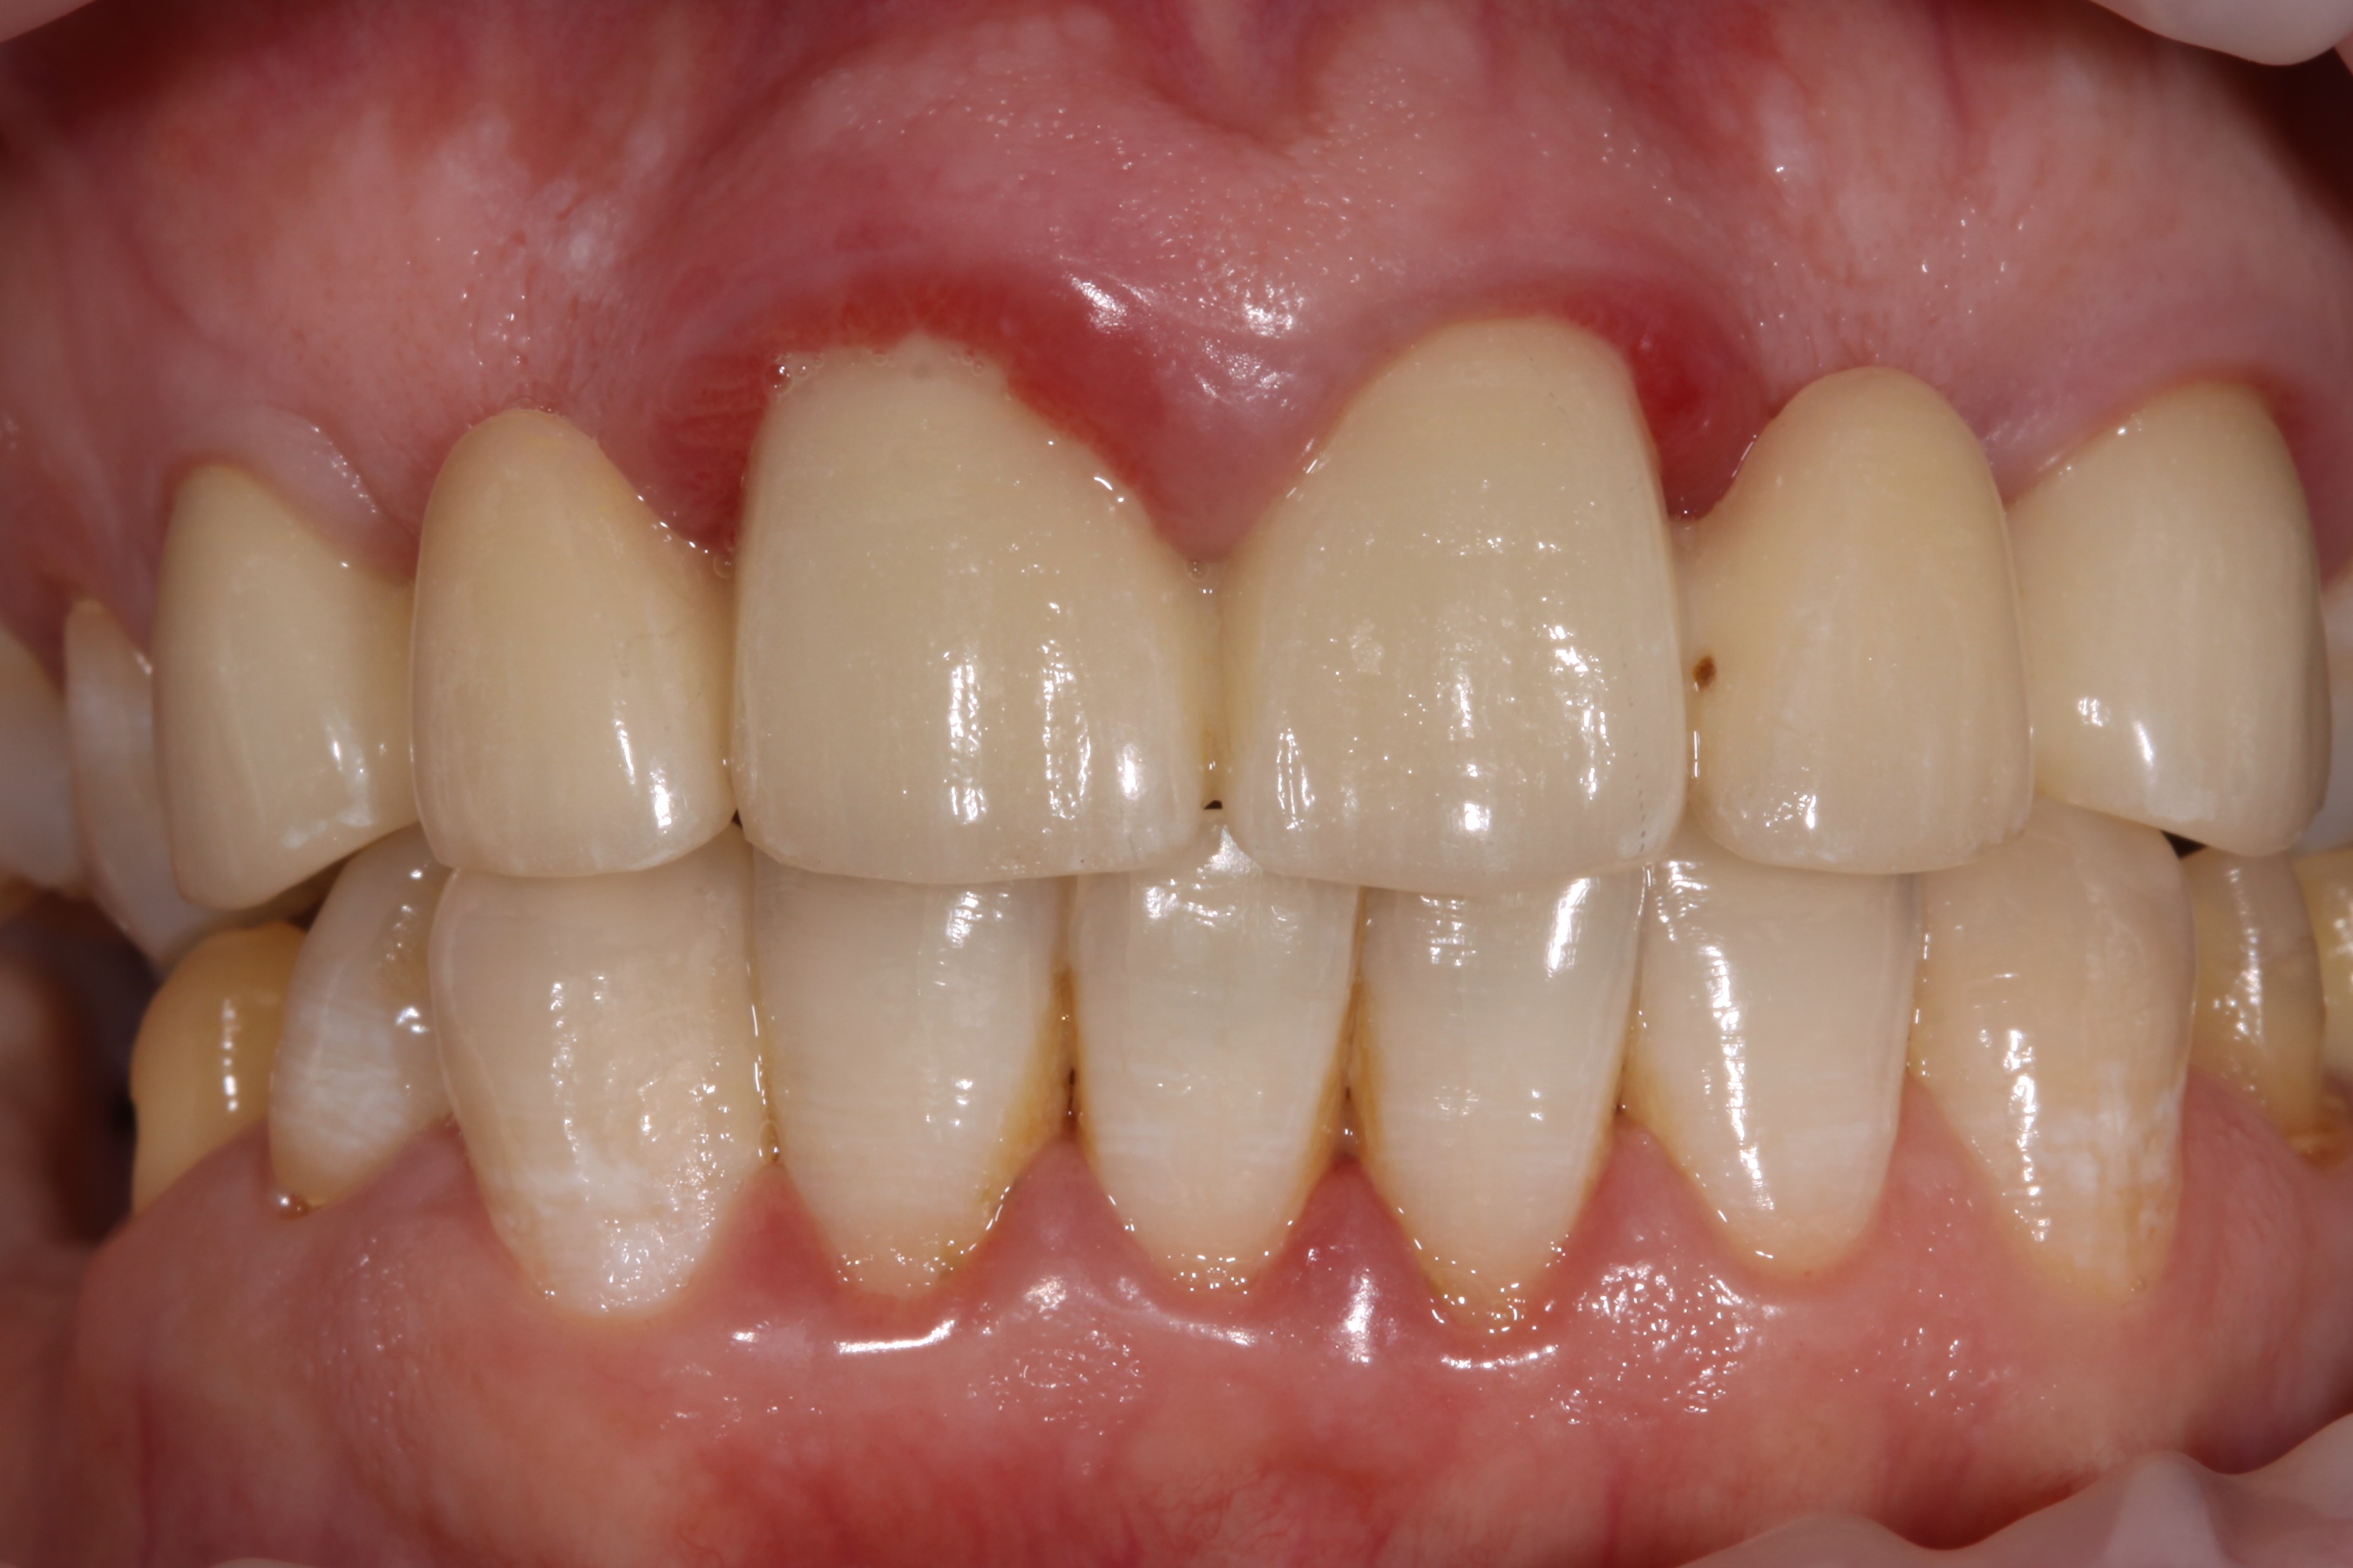 Почему портятся зубы, как их уберечь и чем поможет гастроэнтеролог